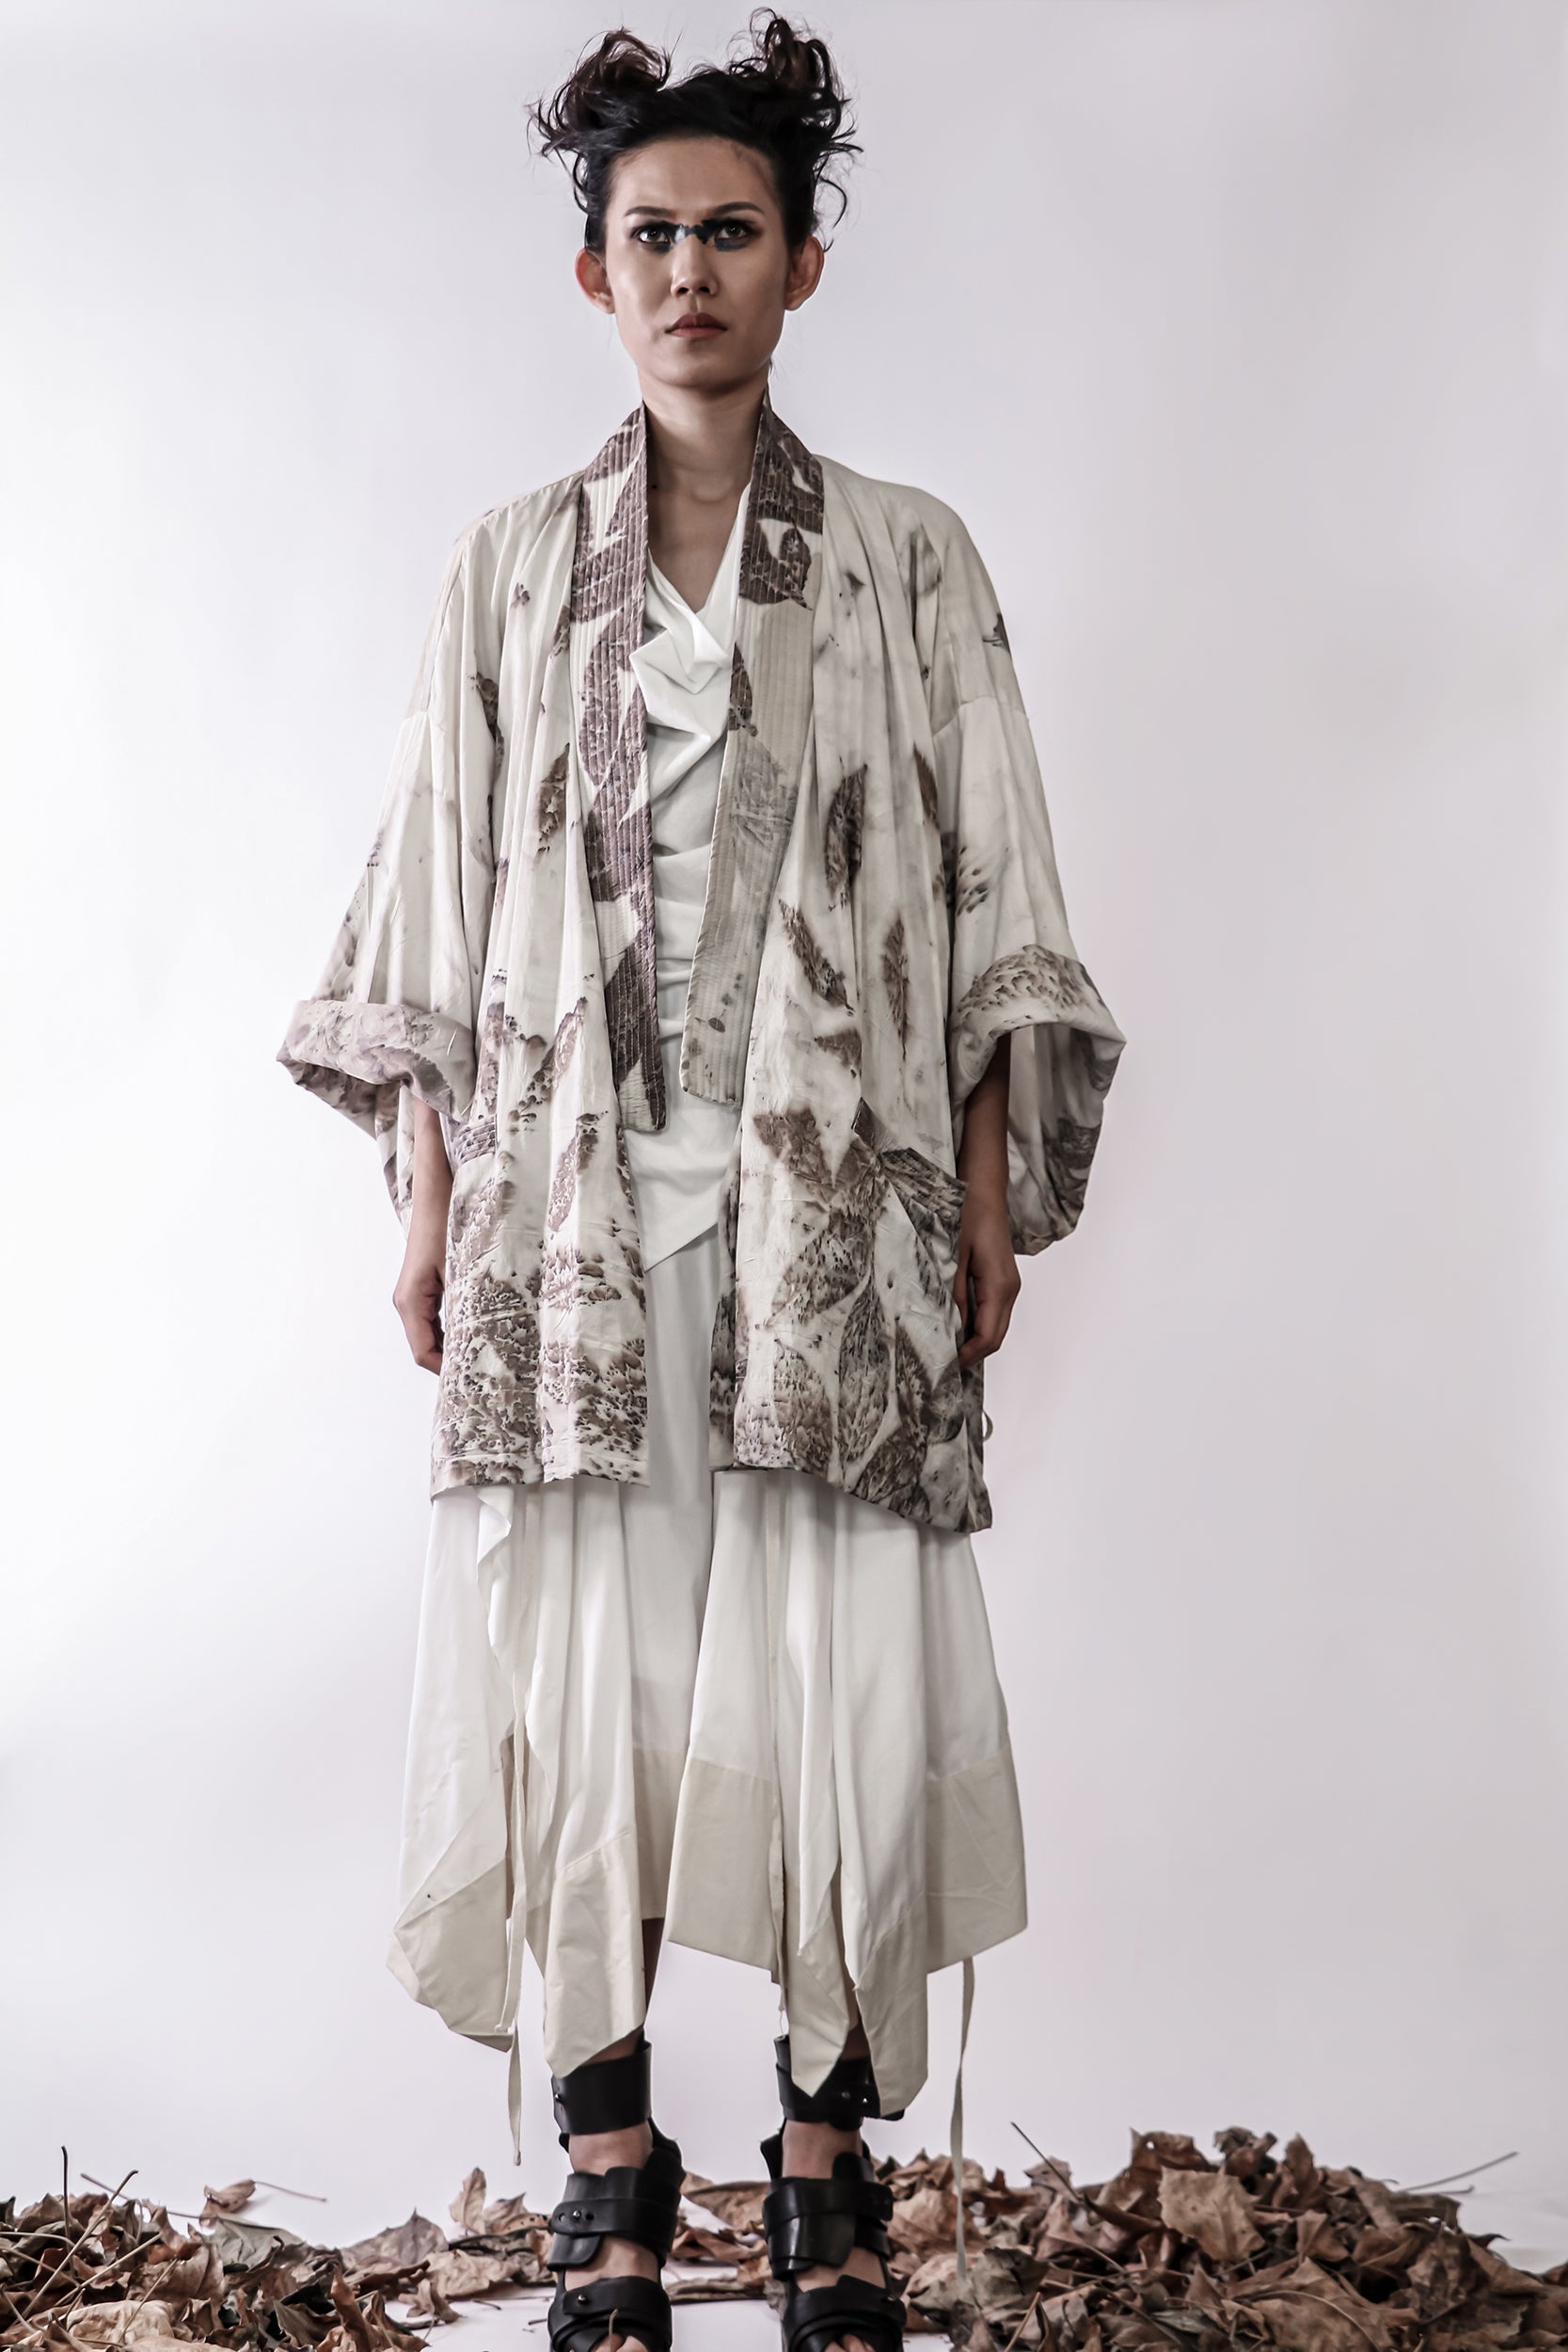 Handmade Botanical Print Double Breasted Oversize Kimono Jacket